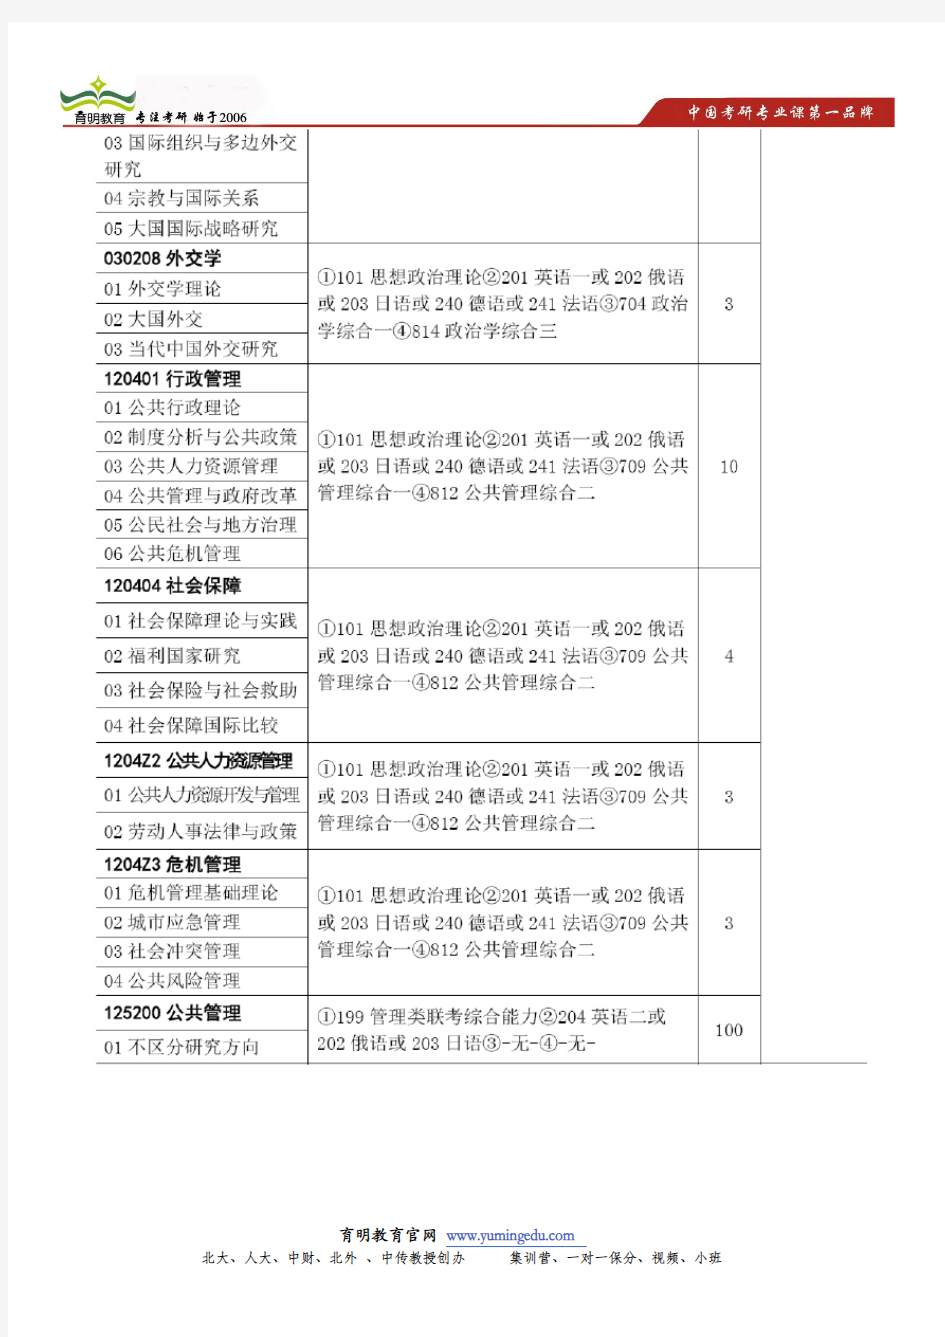 中国政法大学国际政治考研复试参考书目,笔试面试复习内容及要点